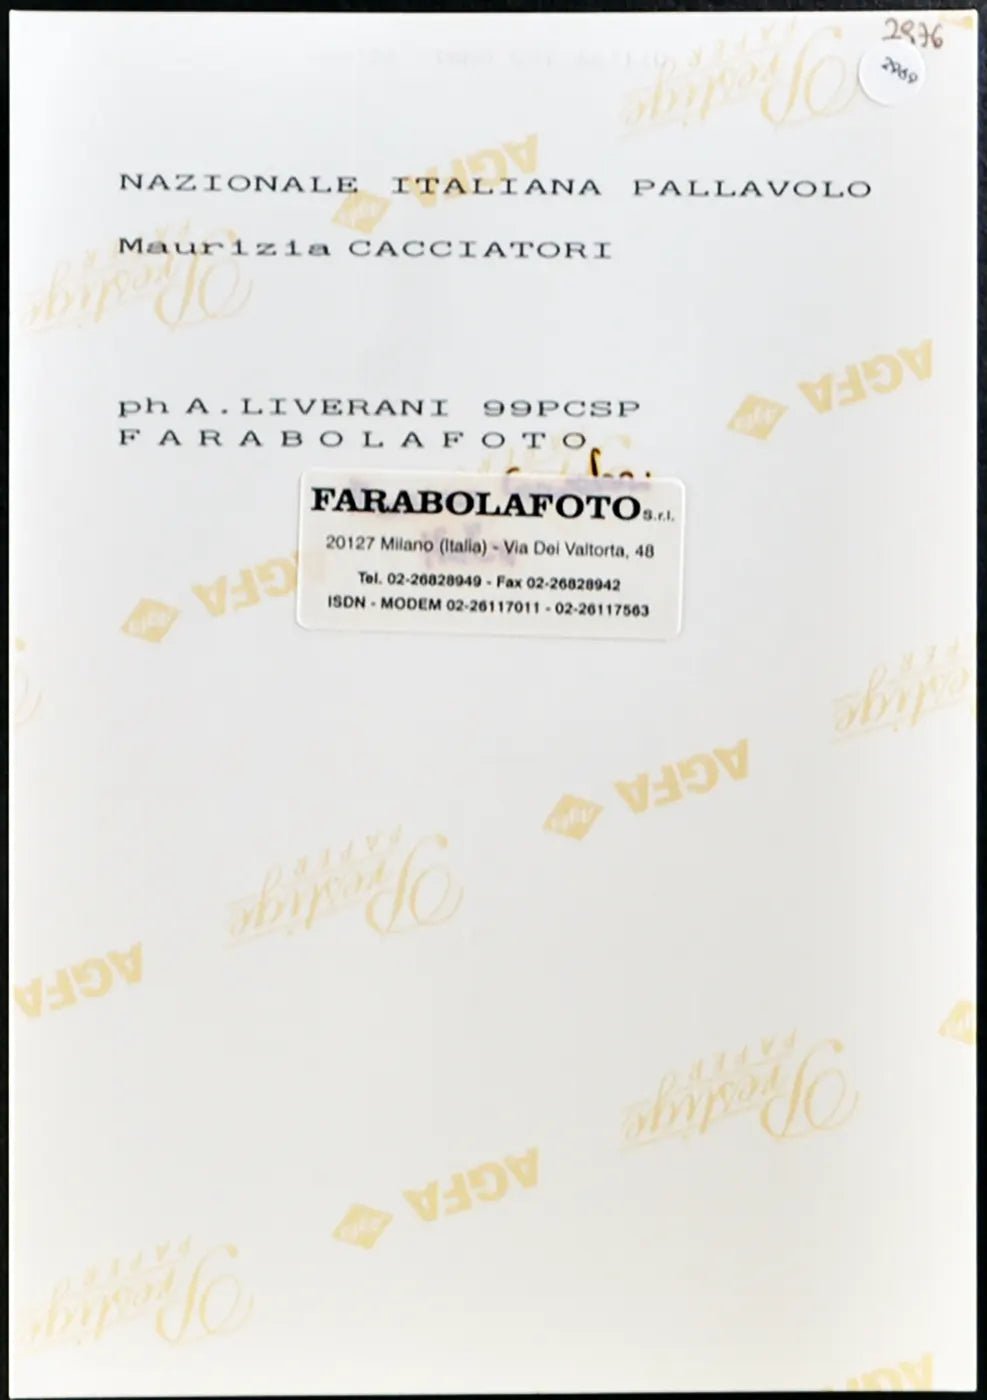 Cacciatori Nazionale Pallavolo 1999 Ft 2969 - Stampa 20x15 cm - Farabola Stampa ai sali d'argento